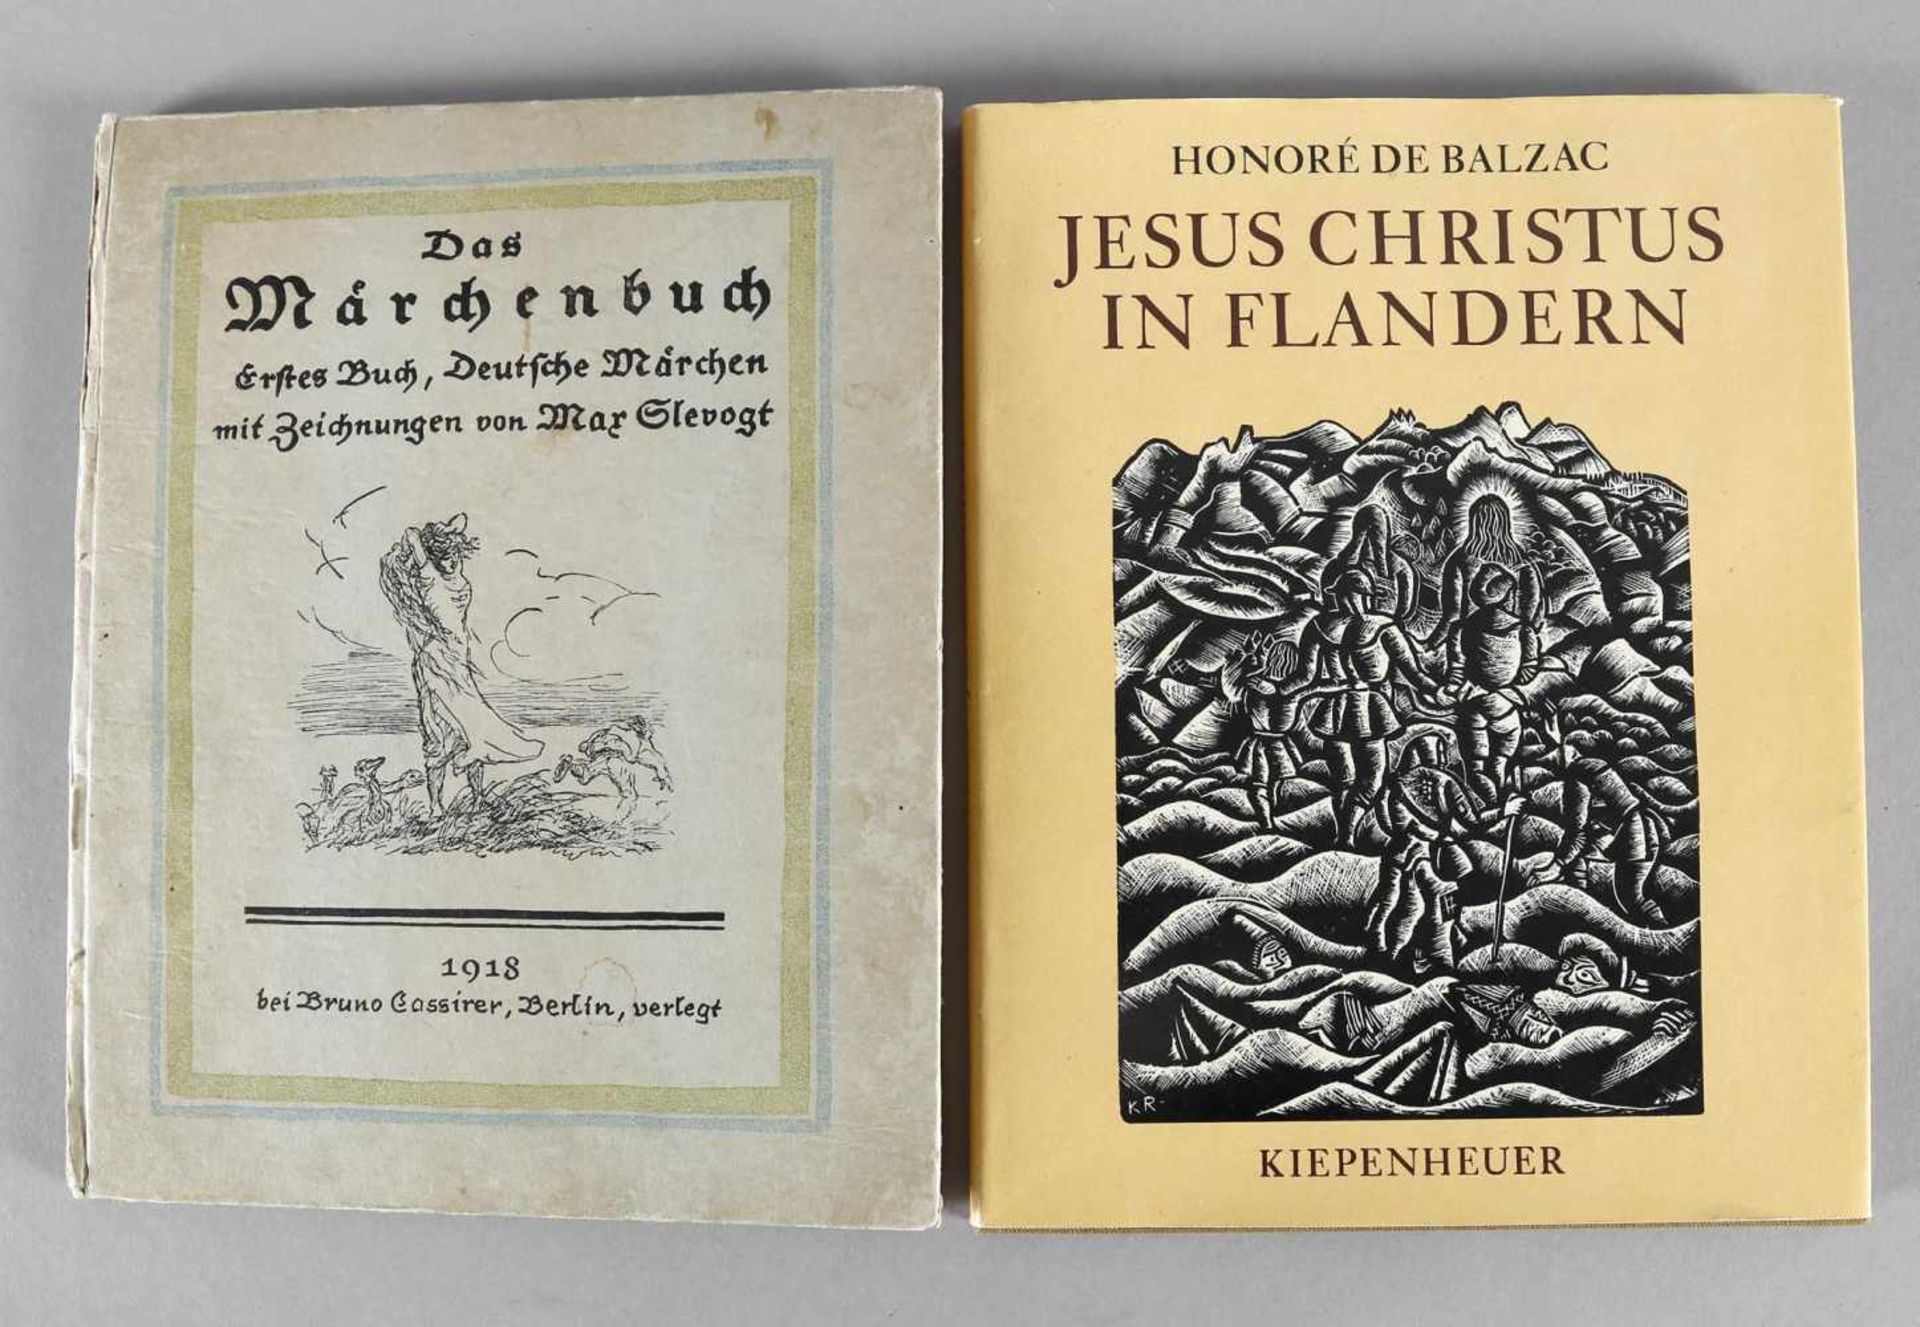 Jacob und Wilhelm Grimm, Das Märchenbuch, Erstes Buch deutsche Märchen mit Zeichnungen von Max